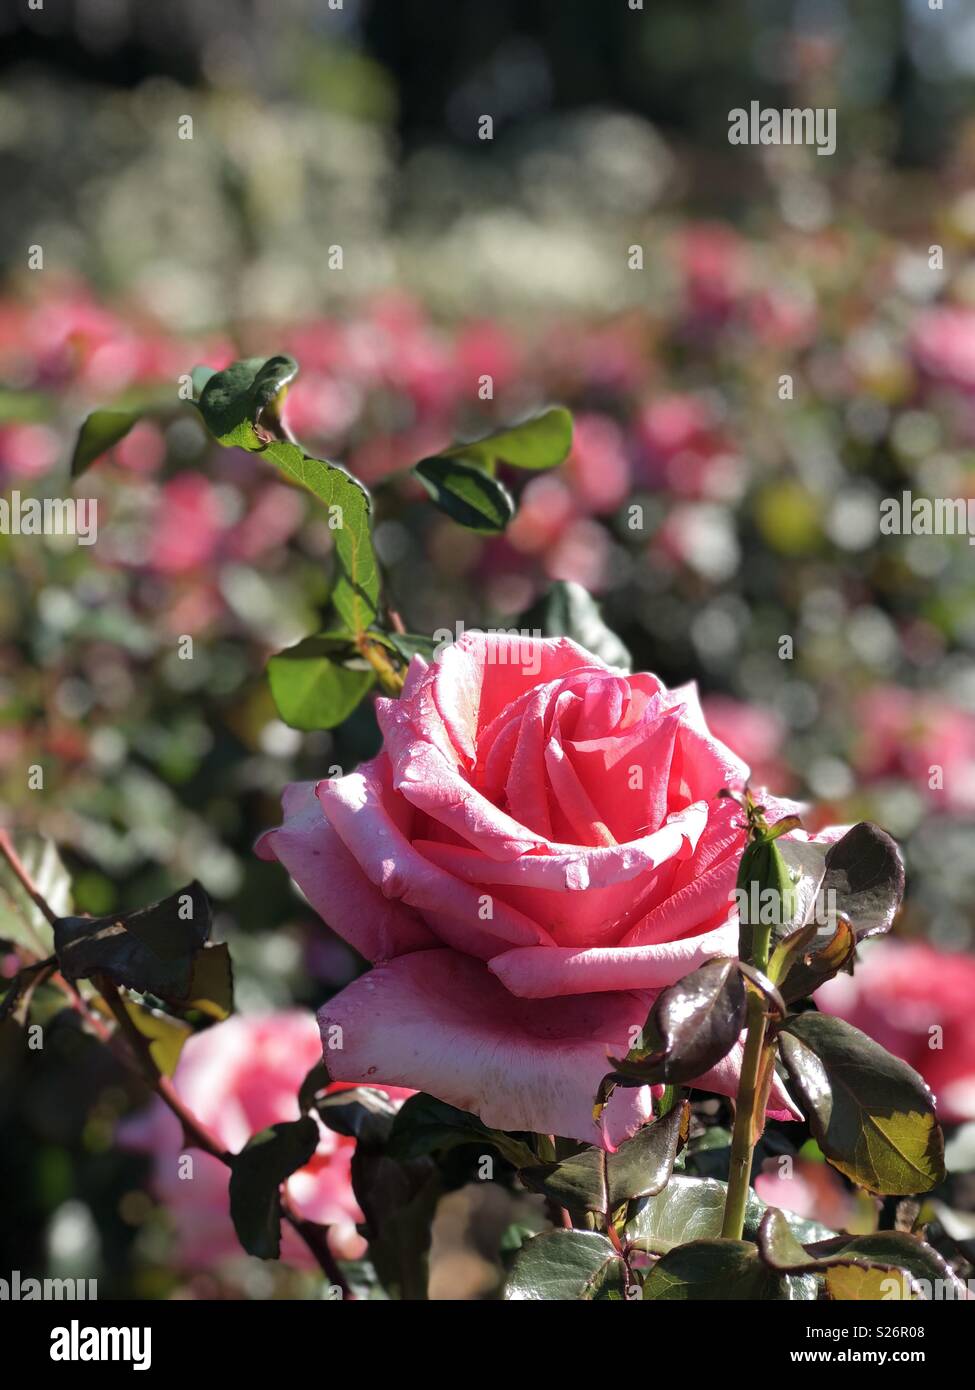 Gros plan d'une rose rose en direct sur un buisson, tourné en mode portrait. Banque D'Images